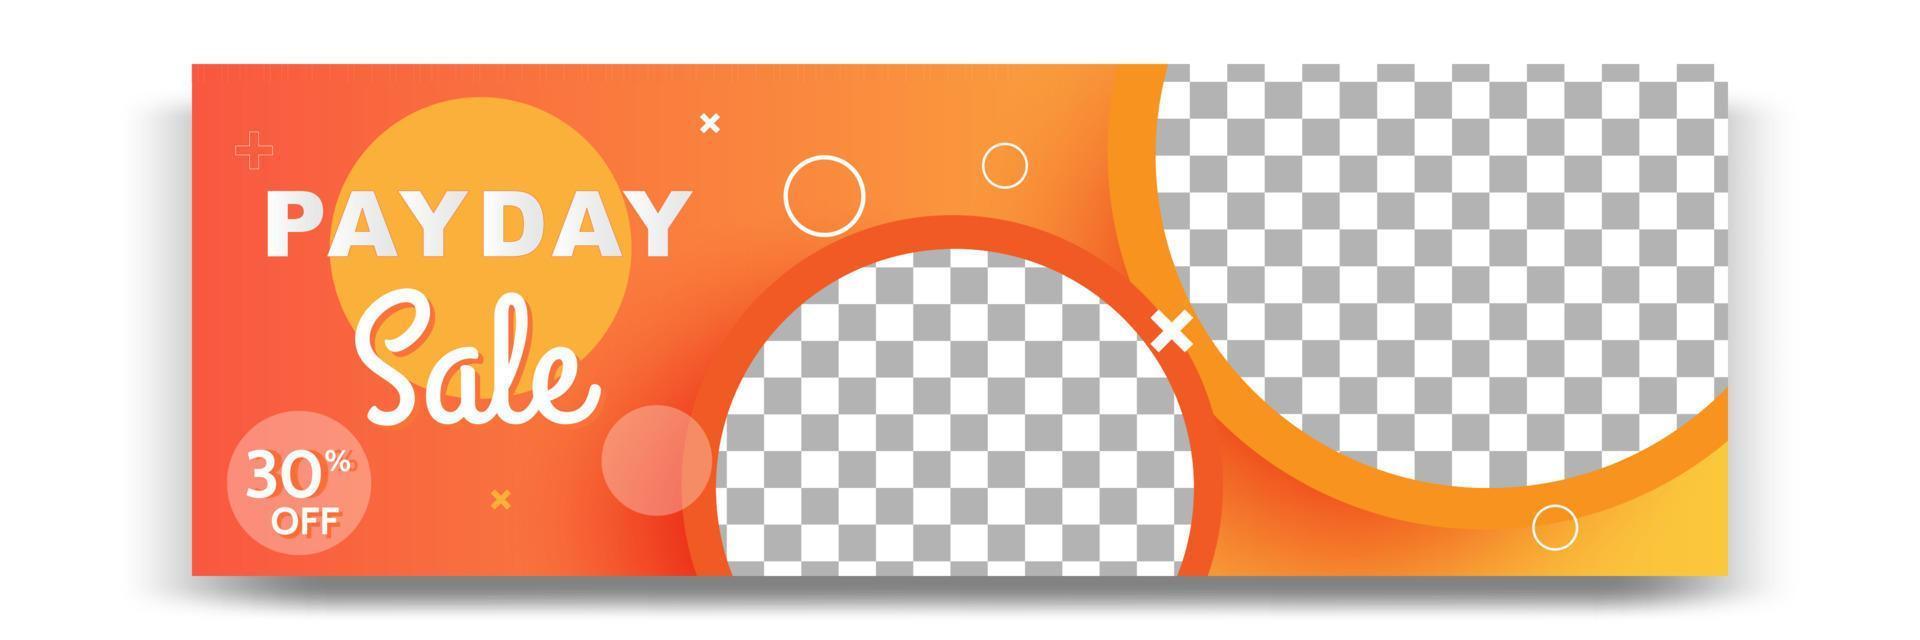 disegno del modello di banner geometrico moderno gradiente astratto in colore giallo, arancione, bianco. adatto per la pubblicità e la promozione in post sui social media, blog, web, copertina, intestazione. vettore